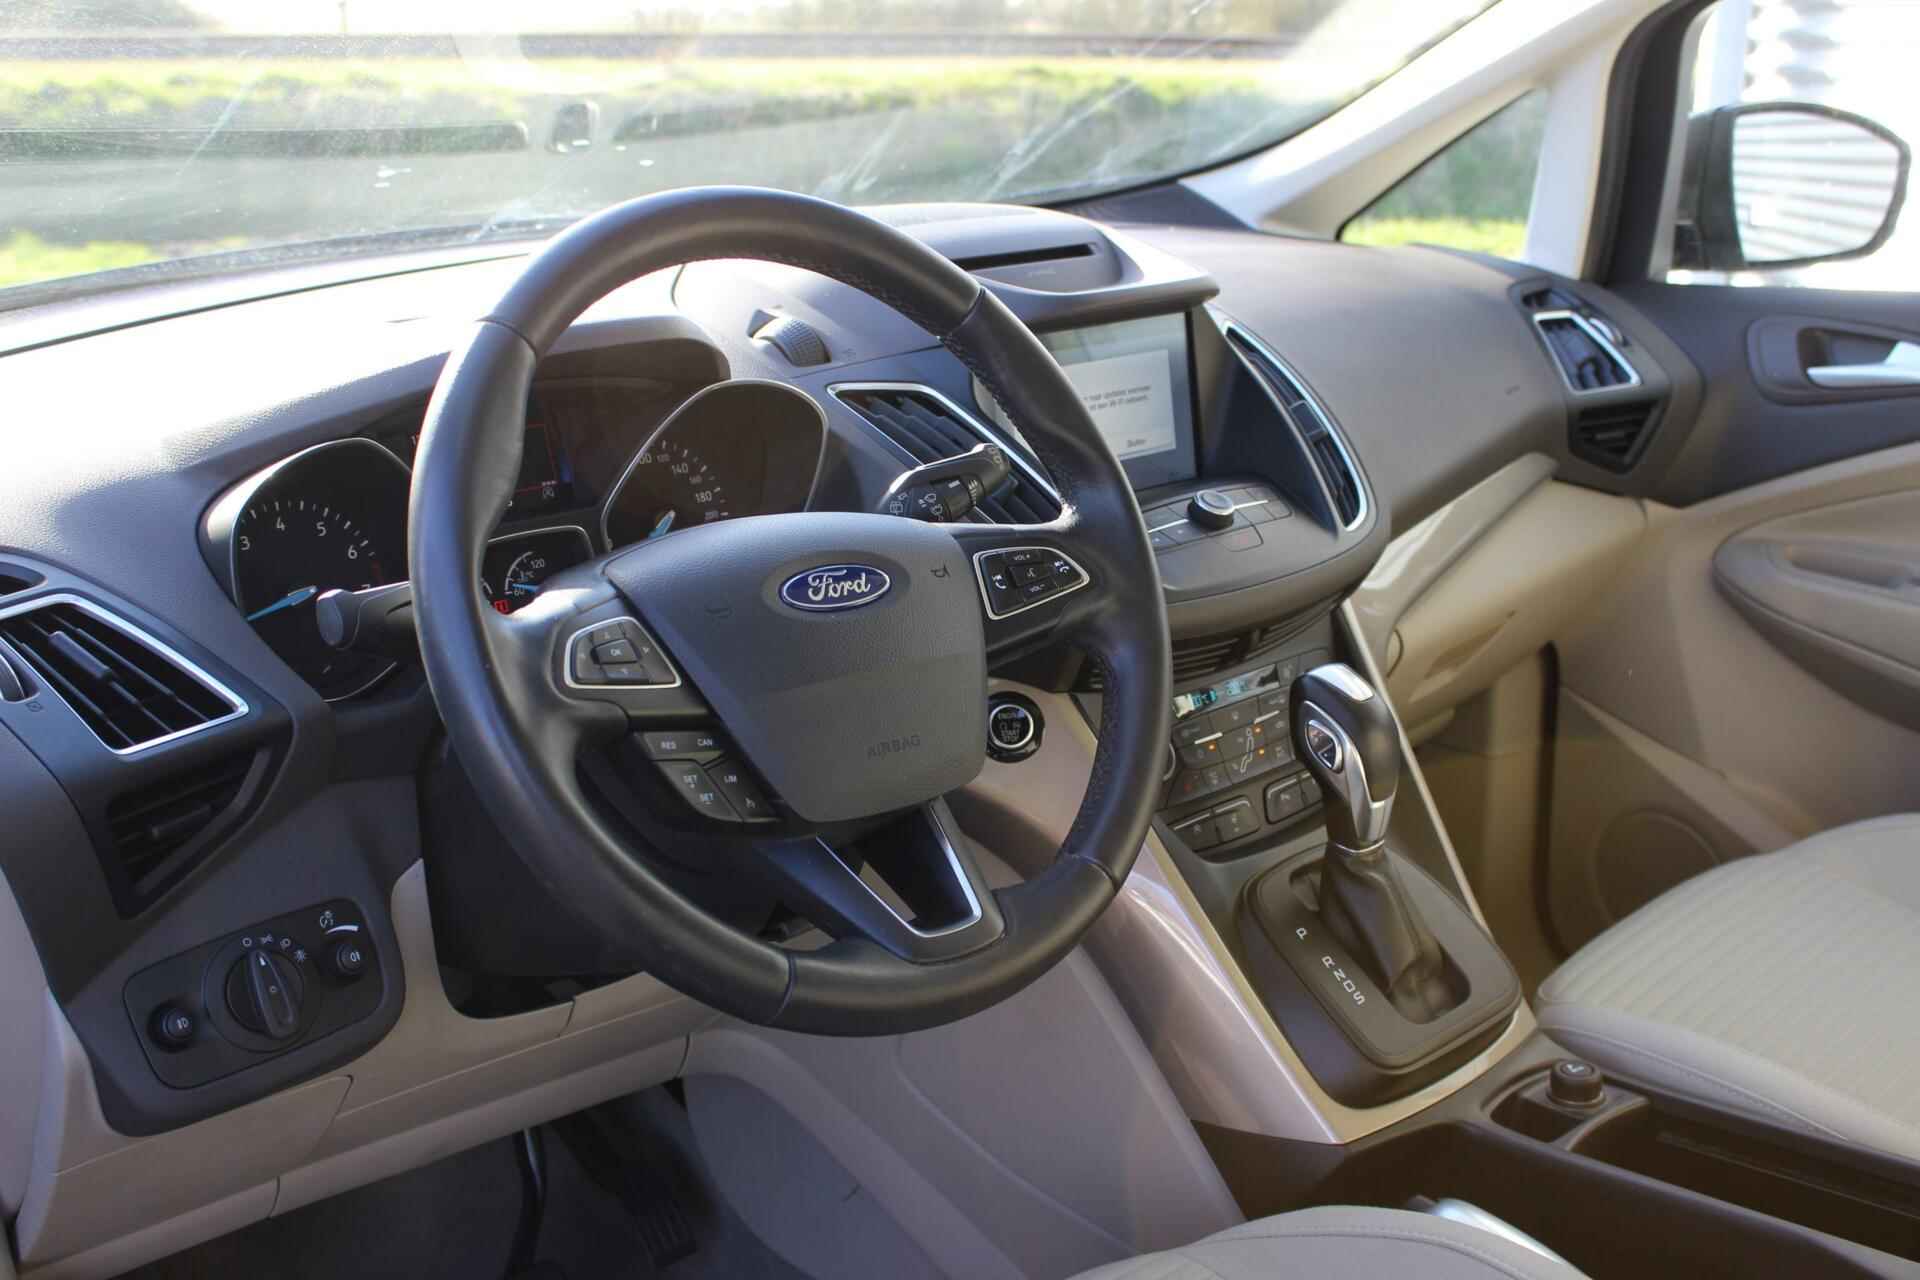 Ford C-Max 1.5 Titanium // Trekhaak - Navigatie - Camera - Apple CarPlay & Android Auto - Cruise control - 10/22